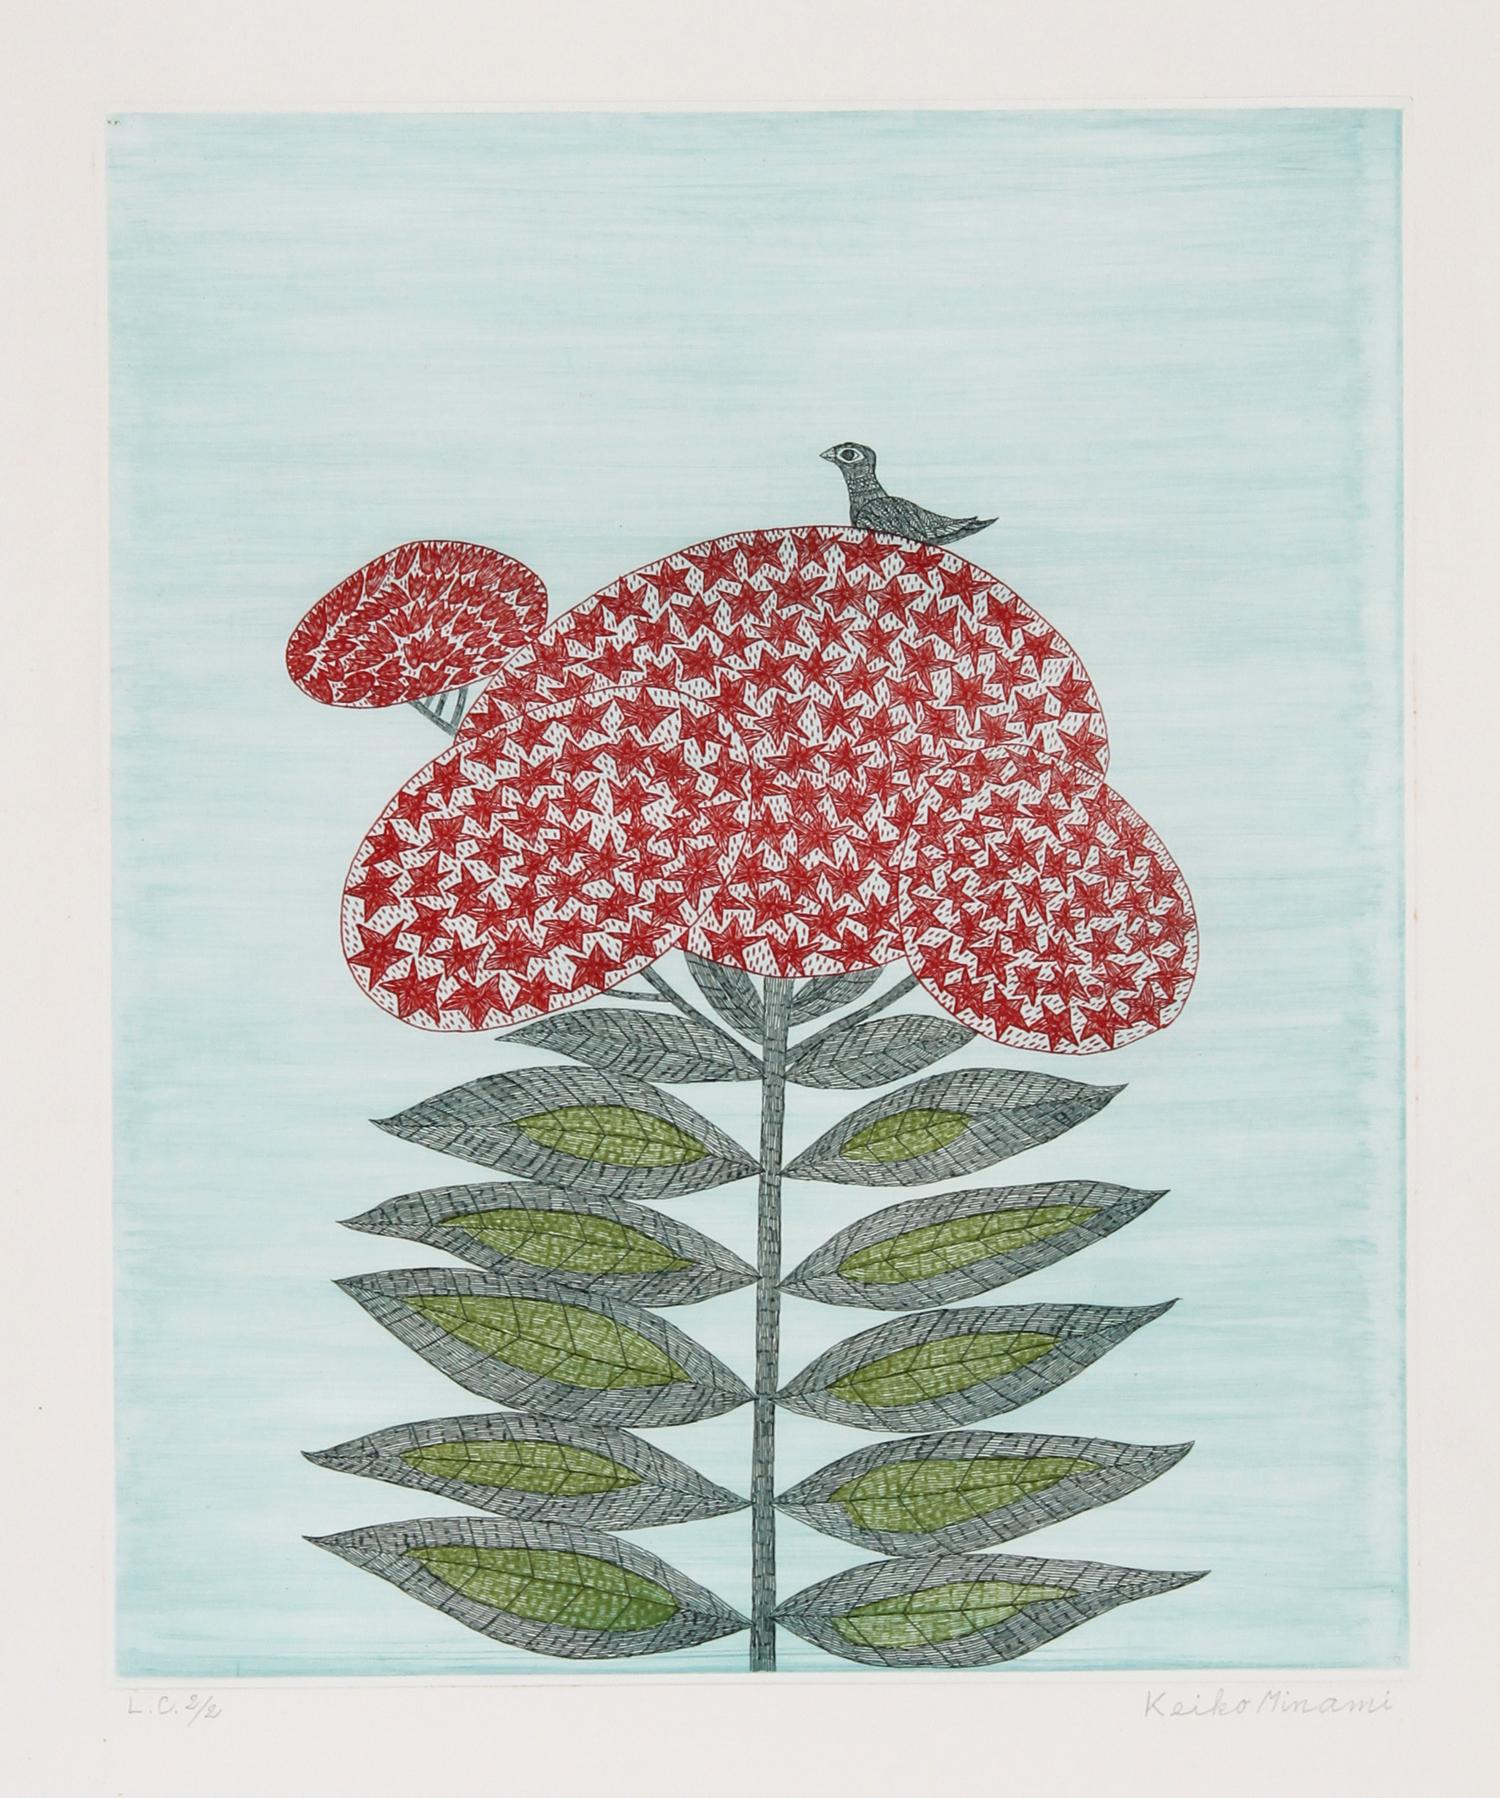 Artistics : Keiko Minami, Japonaise (1911 - 2004)
Titre : Oiseau sur fleur 
Année : vers 1985
Moyen : Aquatinte Gravure, signée et numérotée au crayon
Édition : 120
Taille de l'image : 13 x 11 pouces 
Taille : 22 in. x 15 in. (55.88 cm x 38.1 cm)